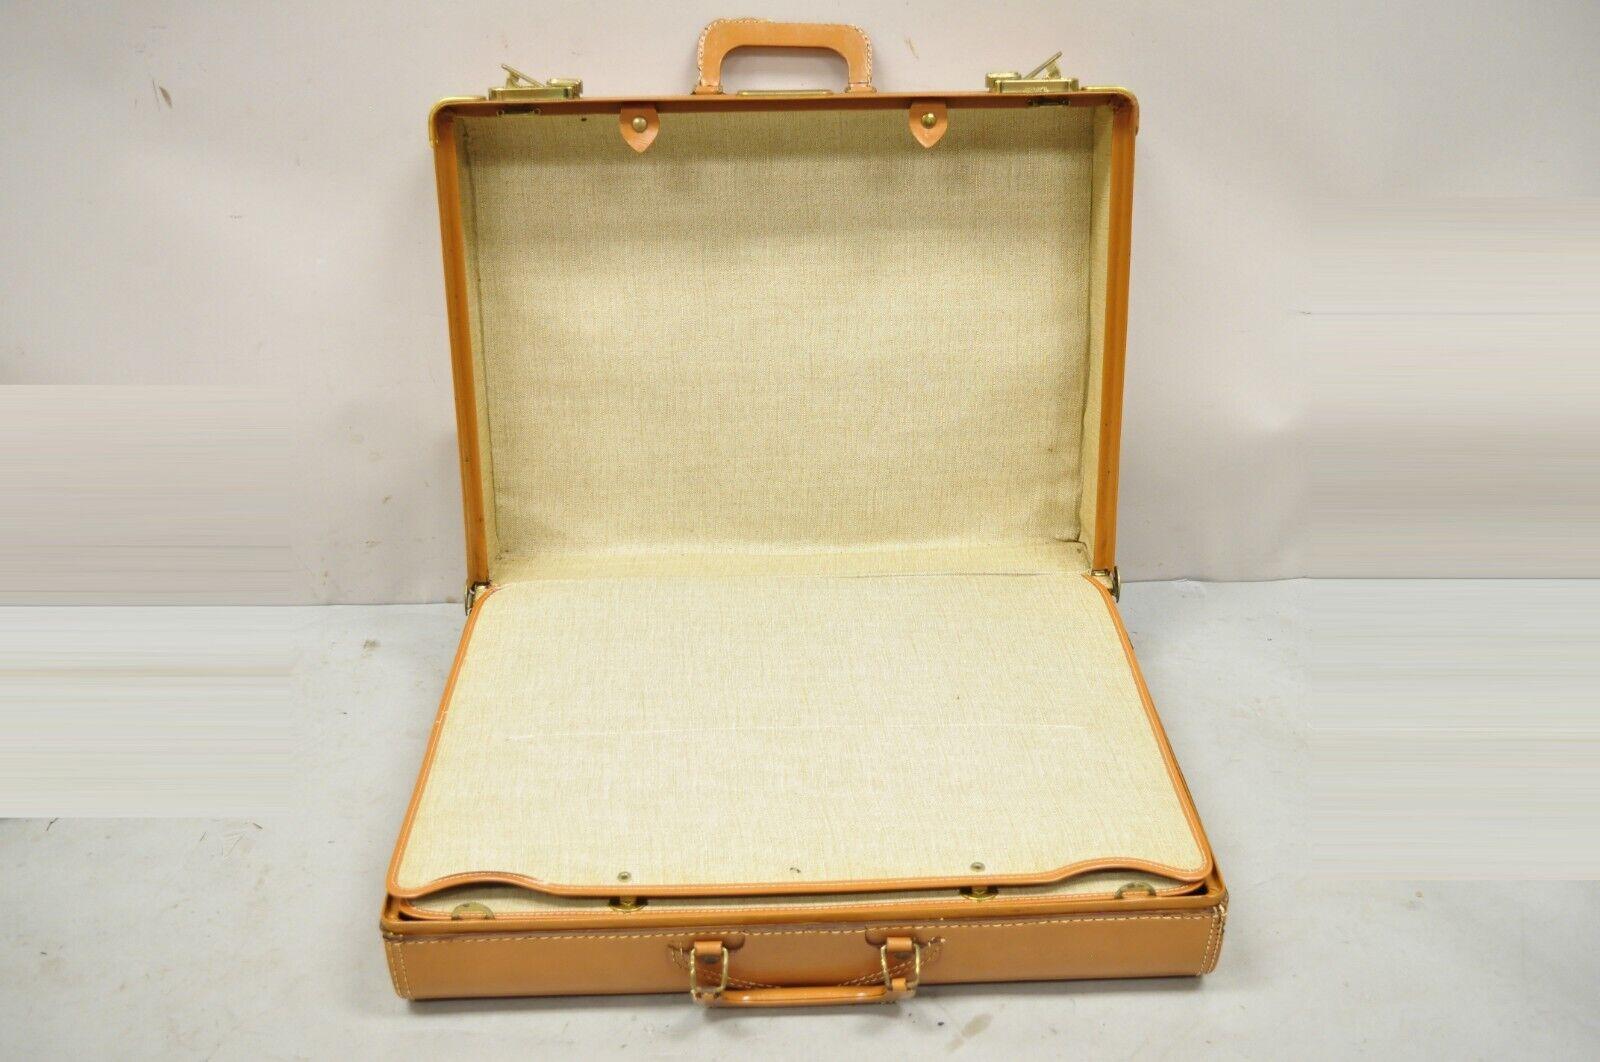 Vintage Genuine Top Grain Cowhide Leather Orange Suitcase Luggage 1